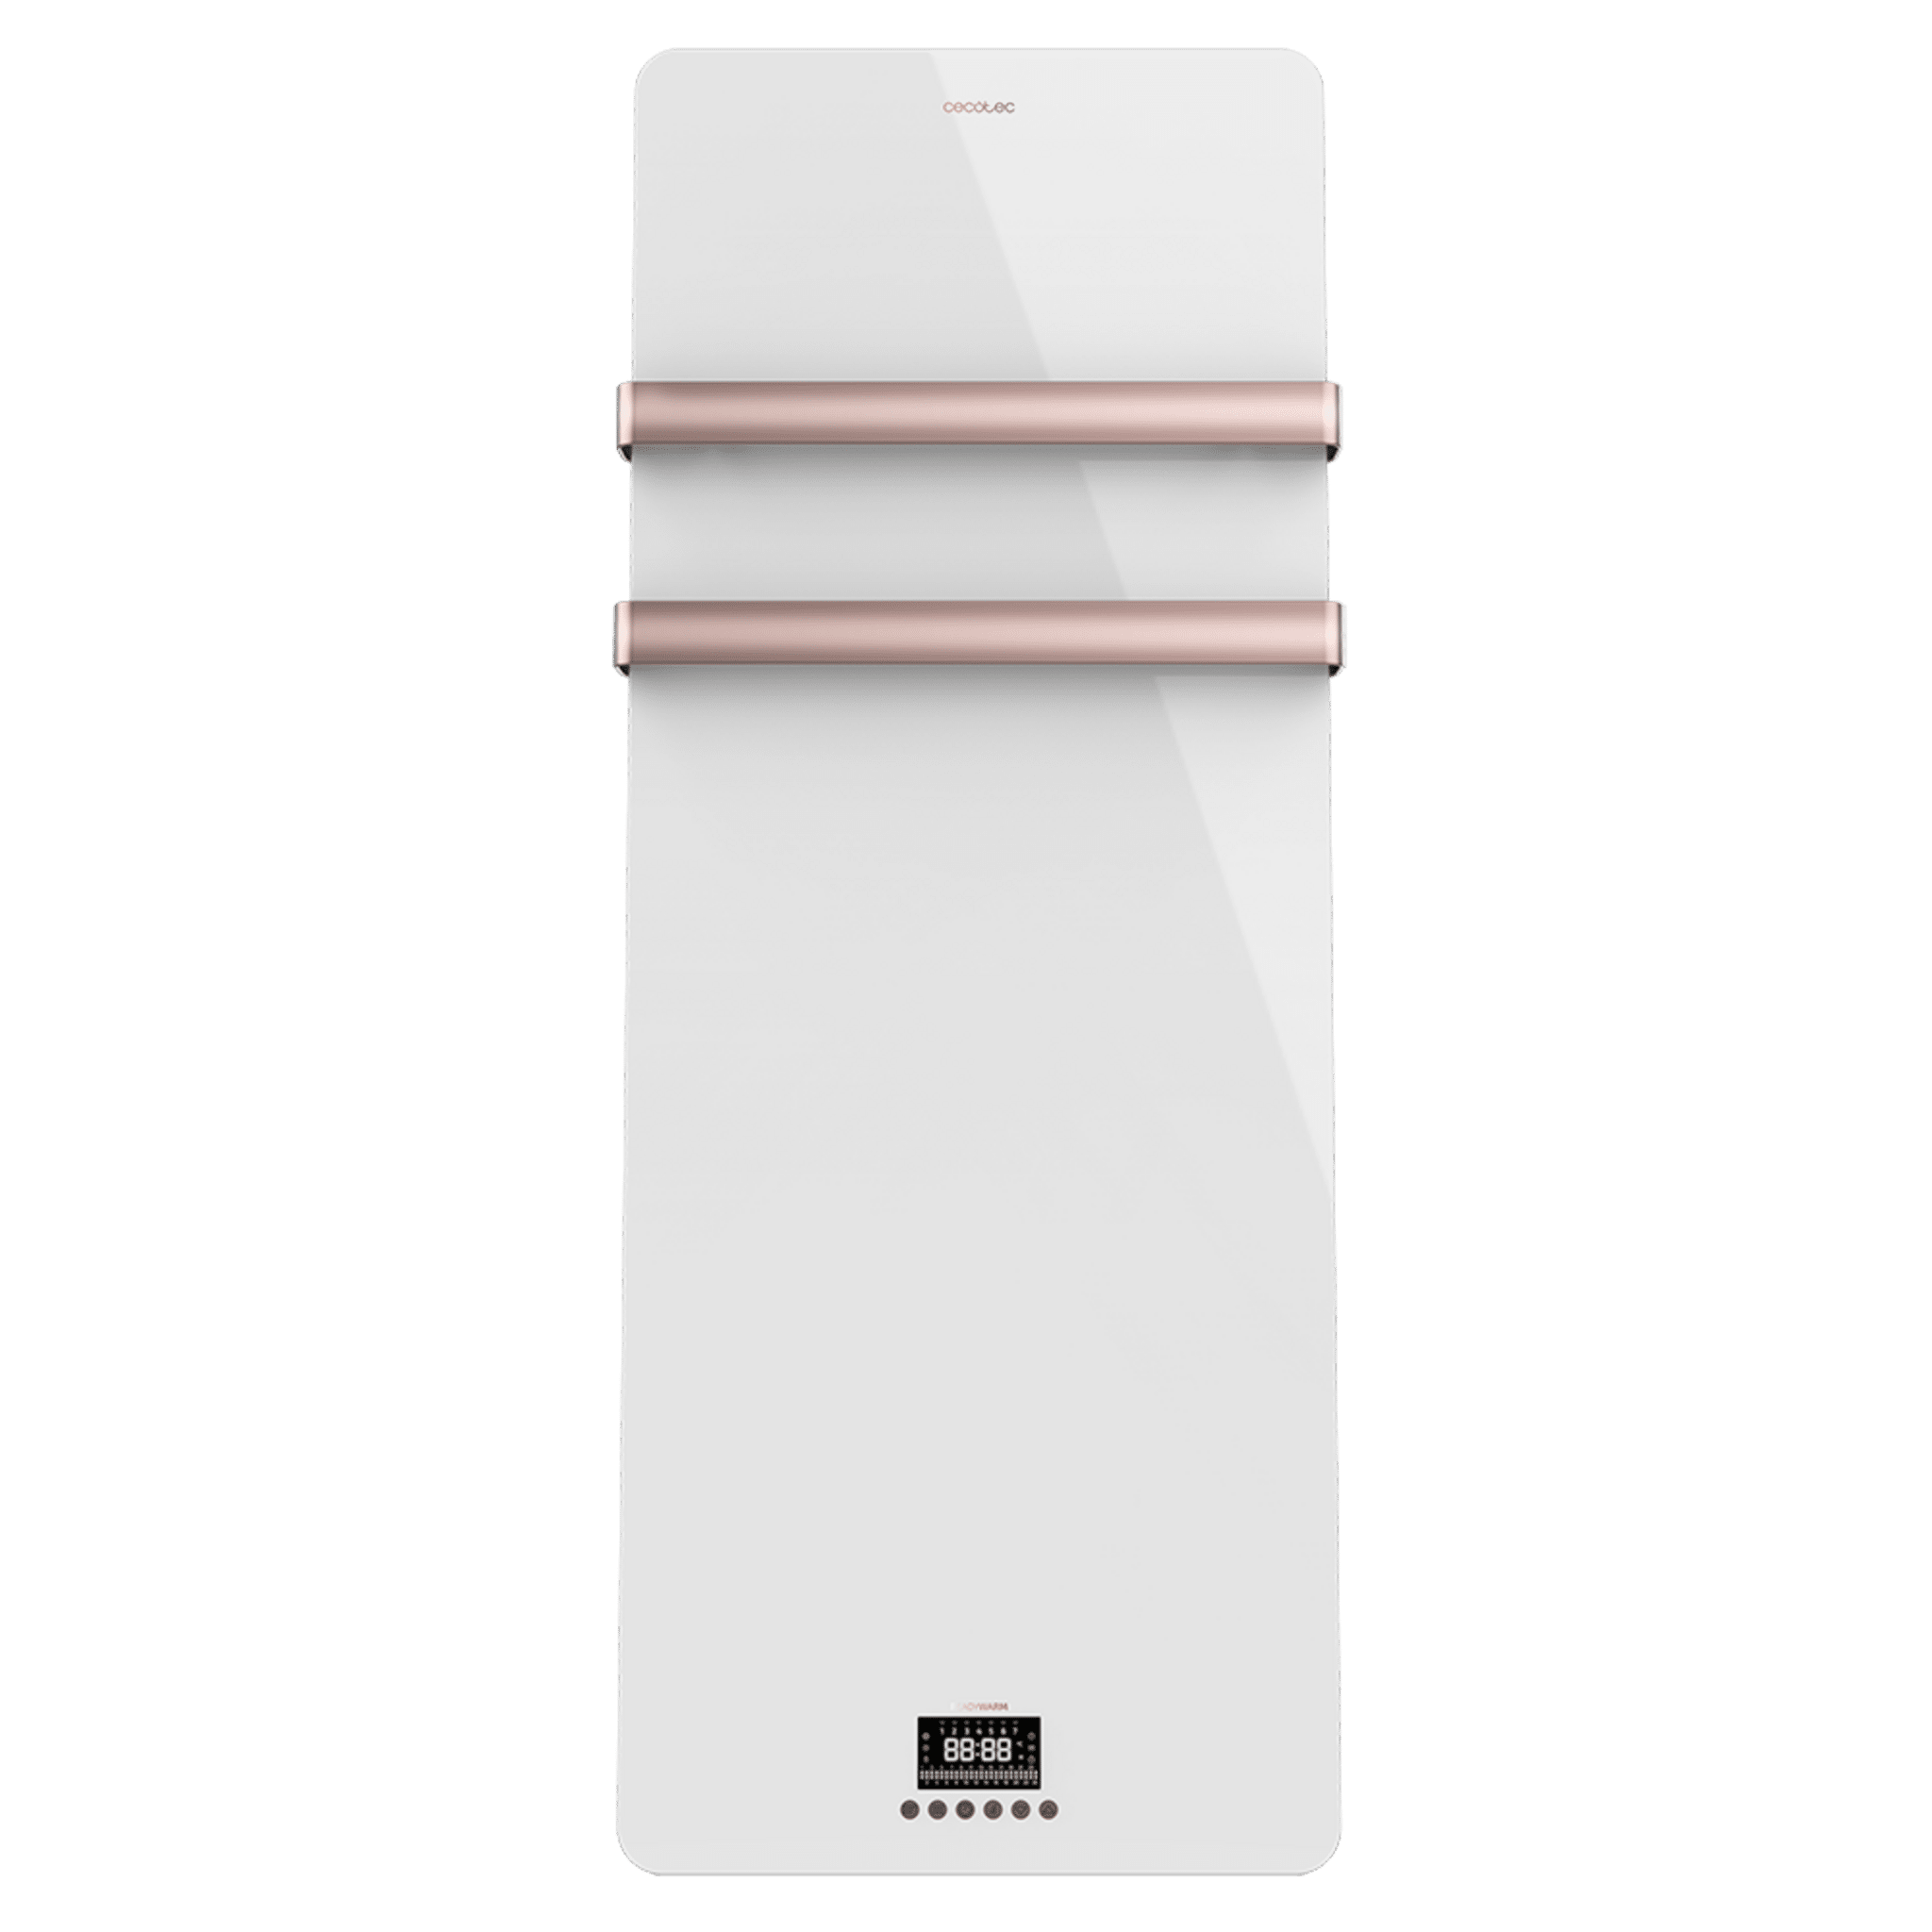 Sèche-serviettes électrique à faible consommation Ready Warm 9870 Crystal Towel Rosegold. 850 W, double étendoir, télécommande, écran LED, minuterie et protection IP24.